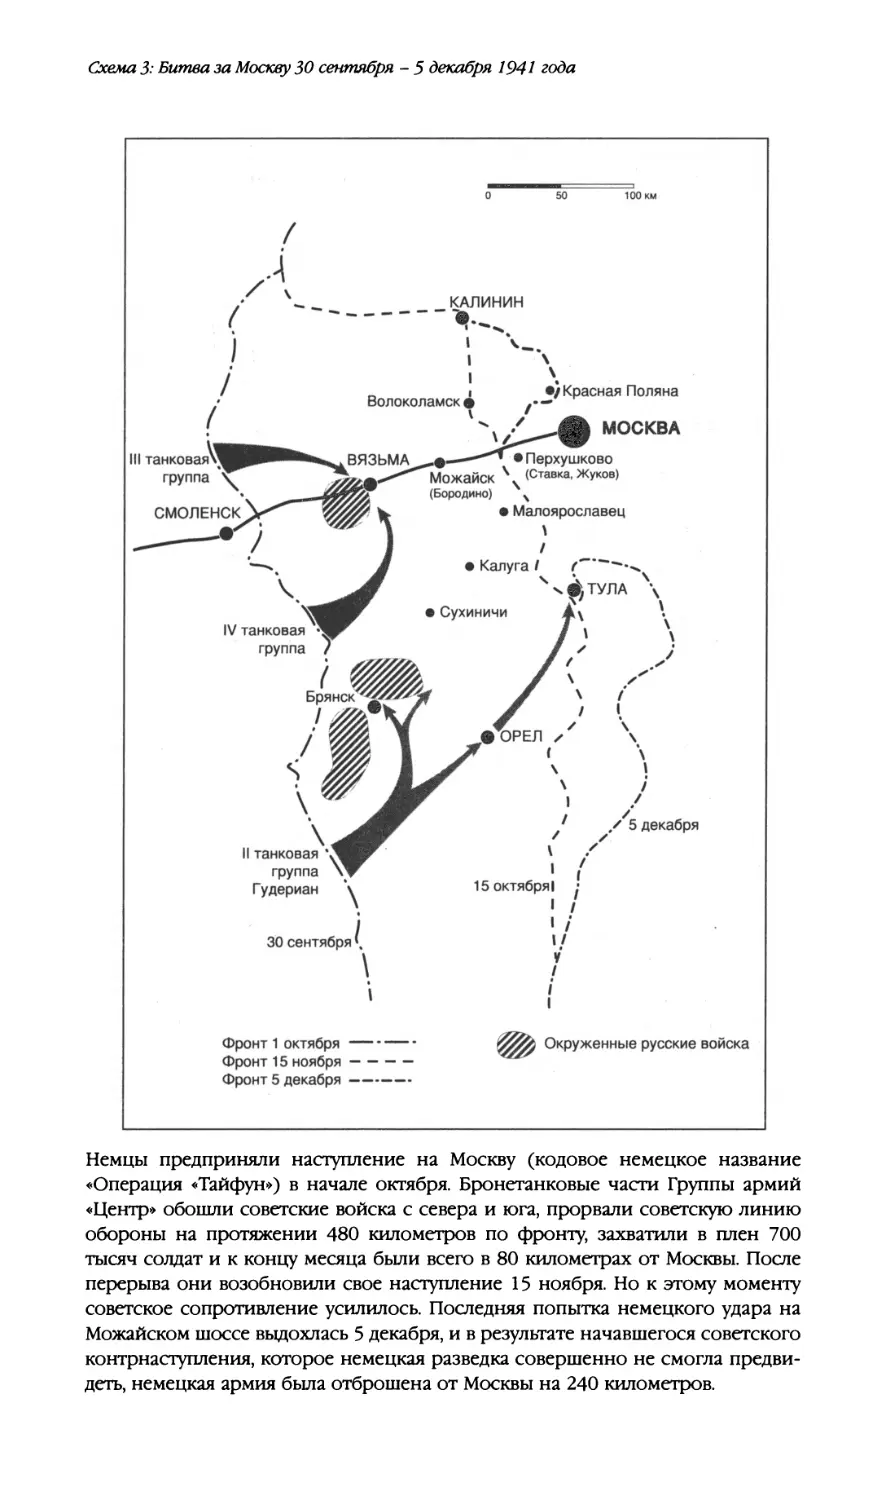 Схема 3: Битва за Москву 30 сентября - 5 декабря 1941 года